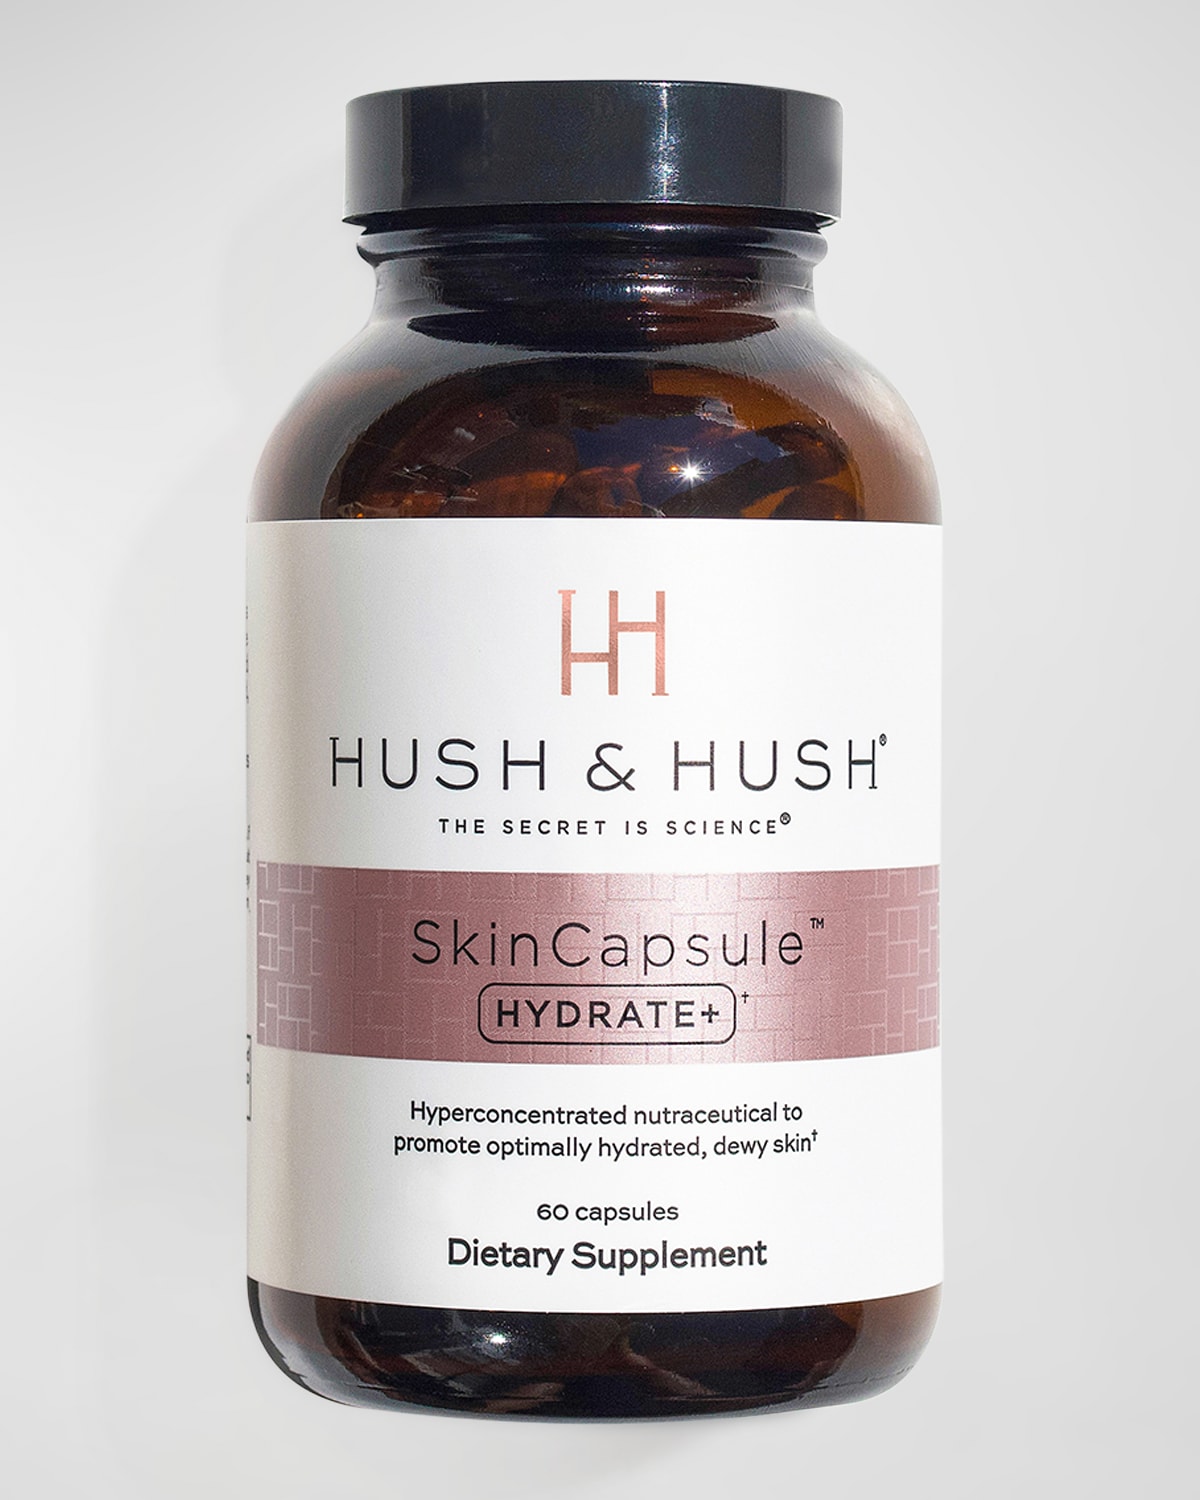 SkinCapsule HYDRATE+ Supplement - 60 Capsules